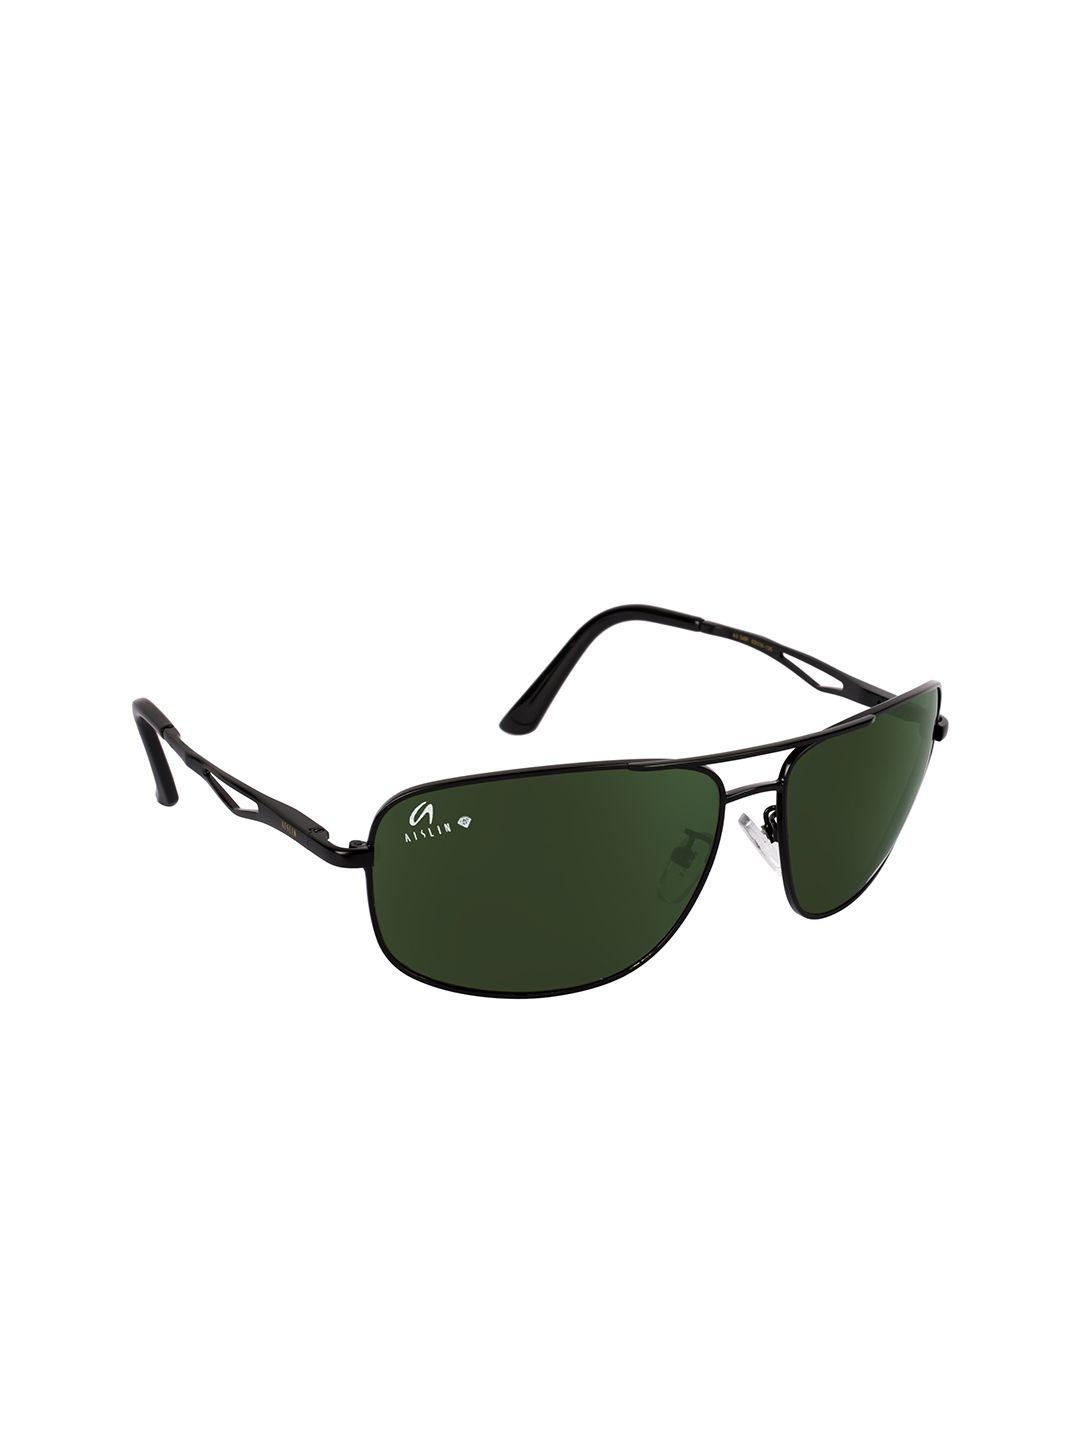 aislin men green lens & black wayfarer sunglasses with uv protected lens 12019-5-as-3481